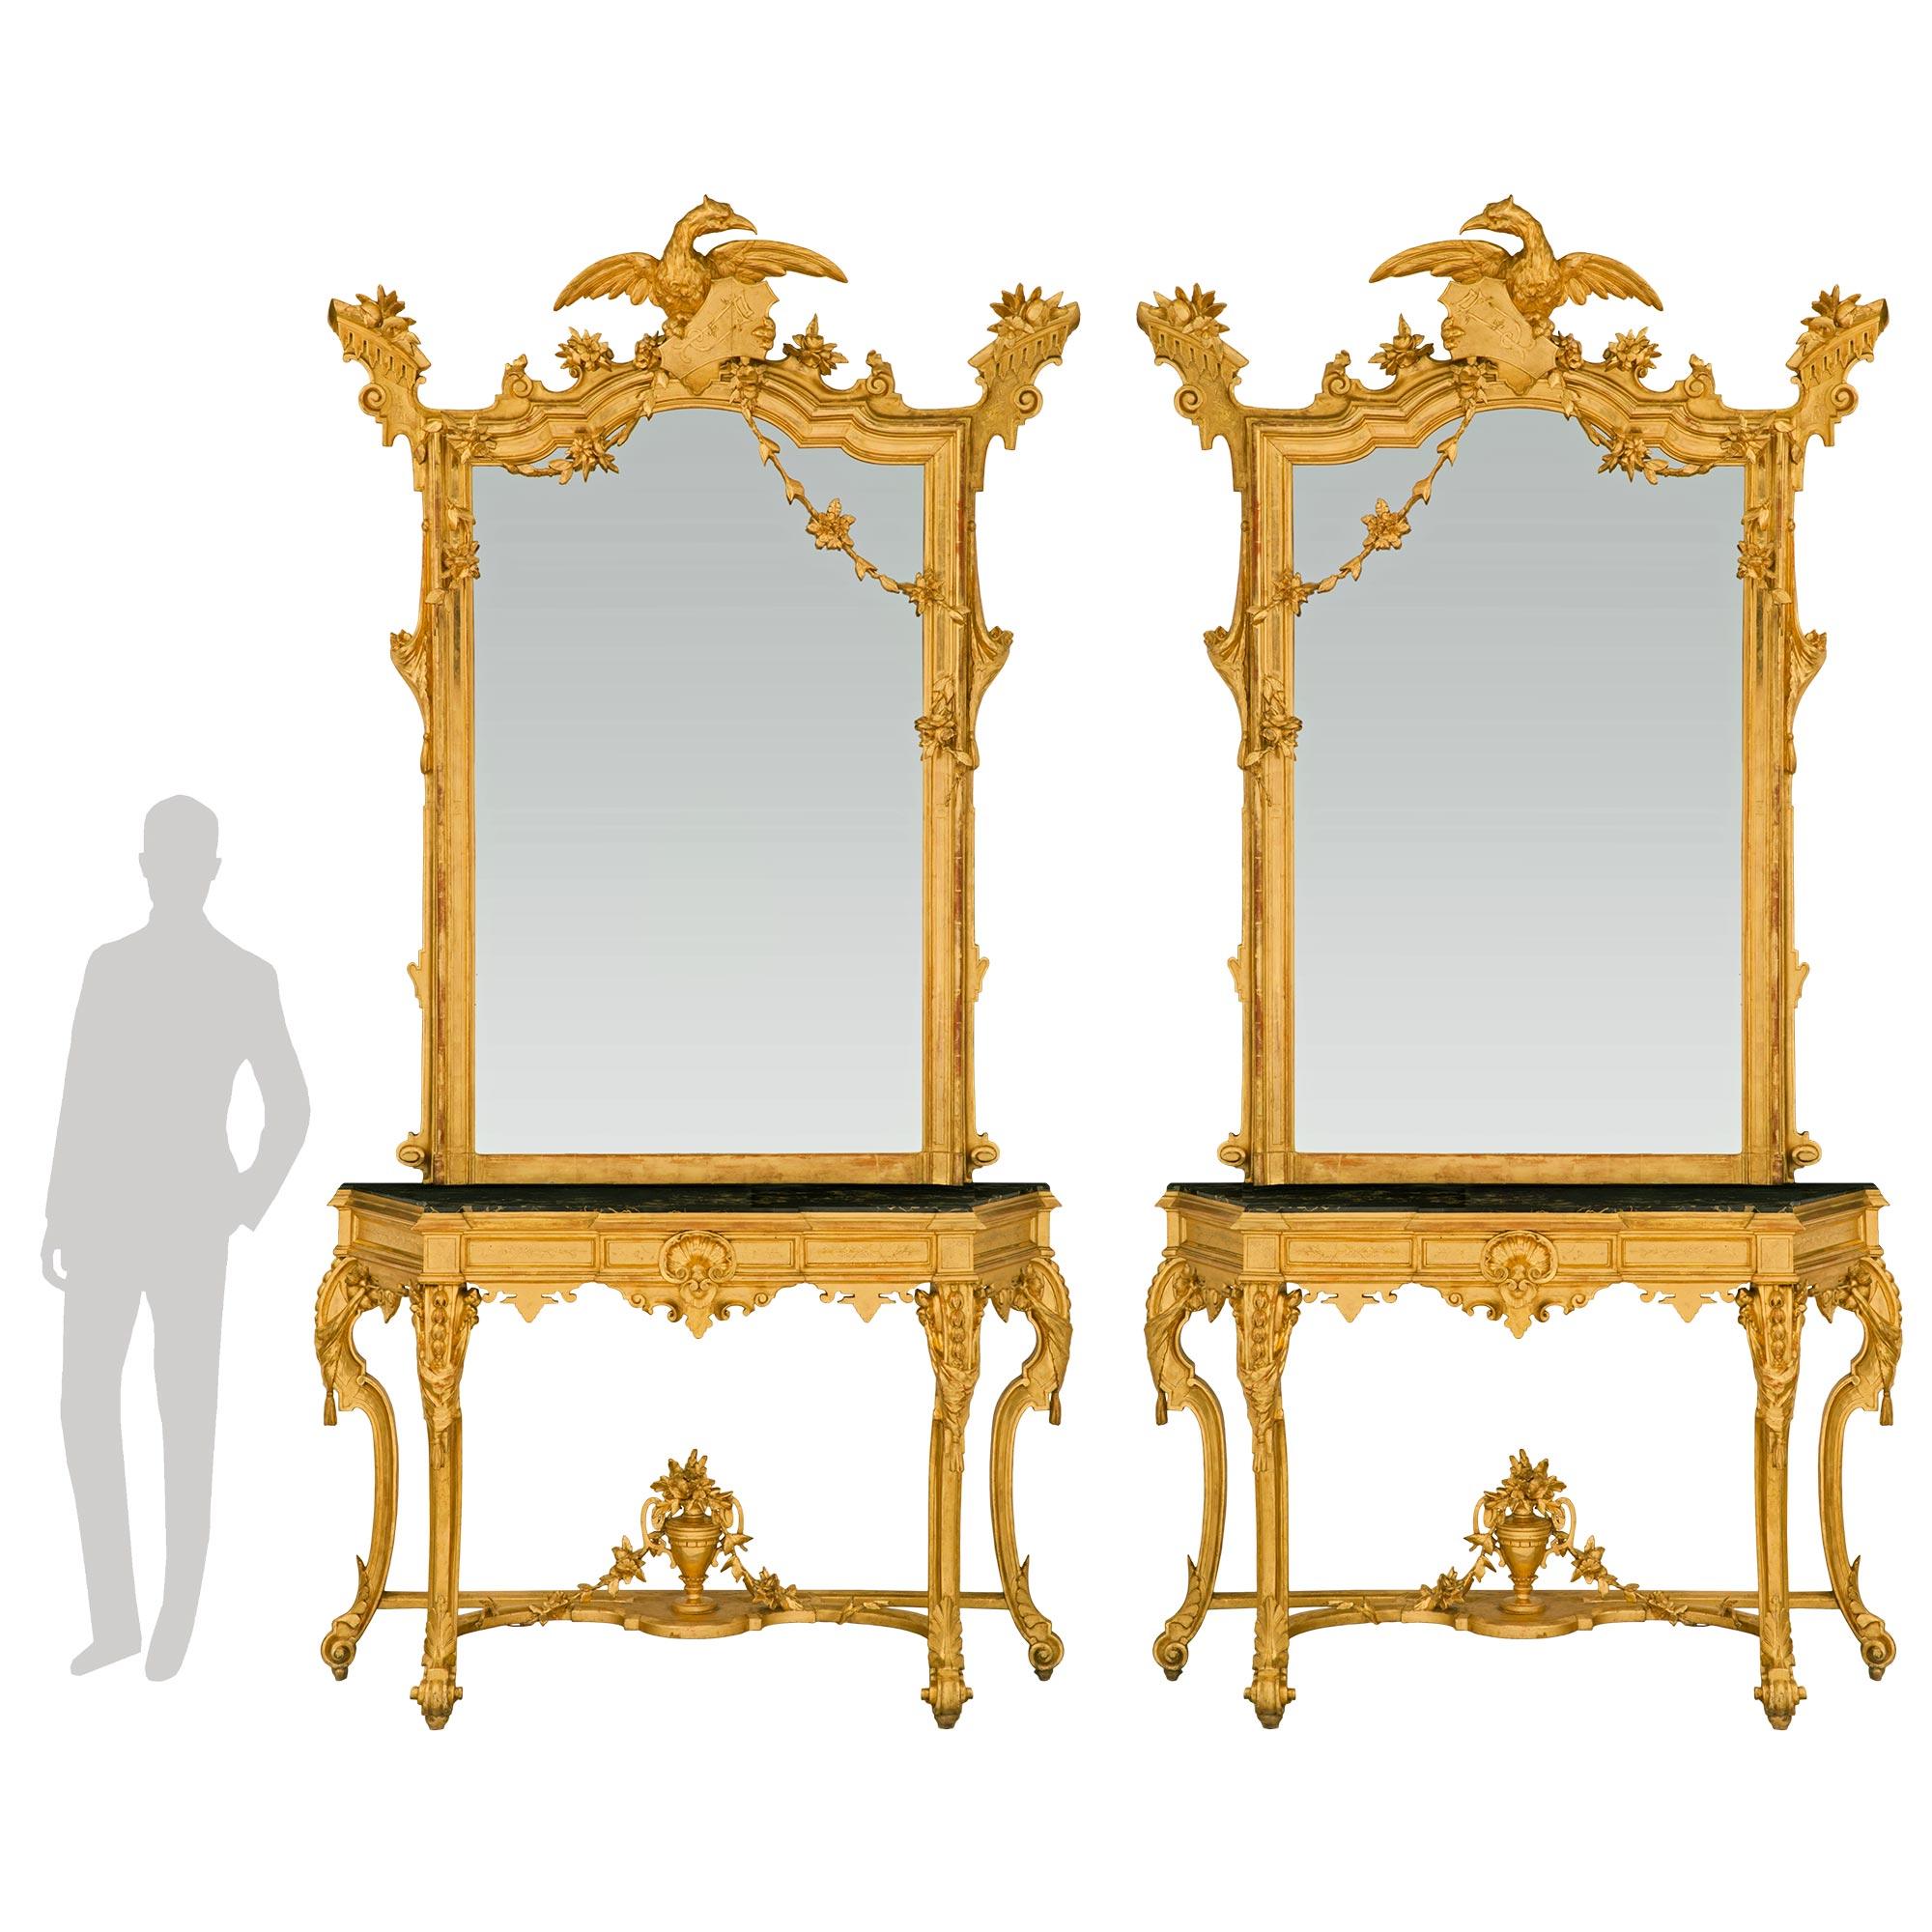 Une paire spectaculaire et de très haute qualité de consoles néo-classiques italiennes du 19ème siècle en bois doré et de miroirs assortis. Chaque importante console autoportante est surélevée par des pieds élégamment chantournés, dotés de